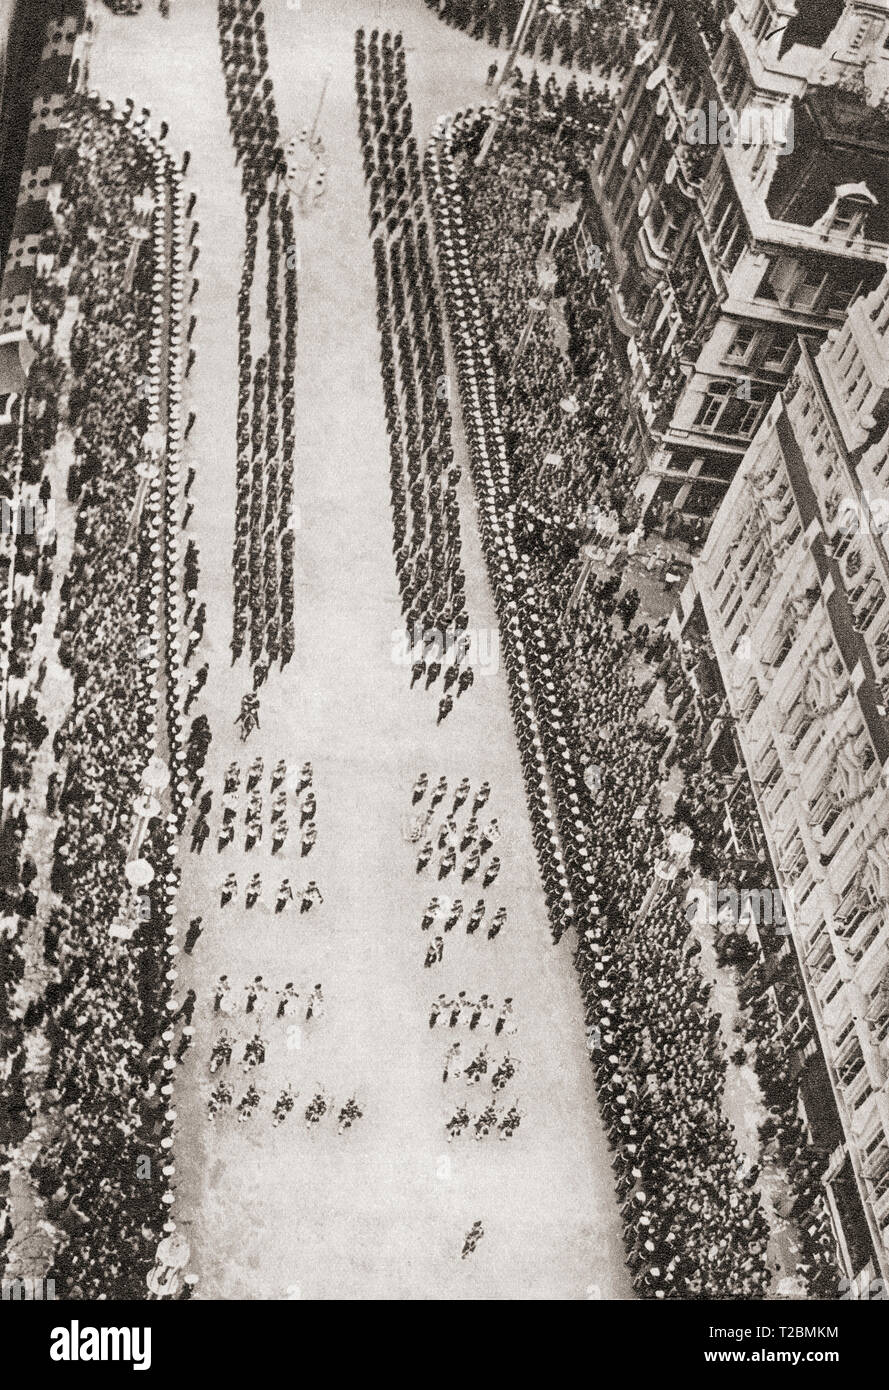 La Procession du couronnement du roi George VI et La Reine Elizabeth, 12 mai 1937, que l'on voit sur la rue Bridge, Westminster, Londres, Angleterre, prises de Big Ben. Du couronnement en images, publié 1937. Banque D'Images